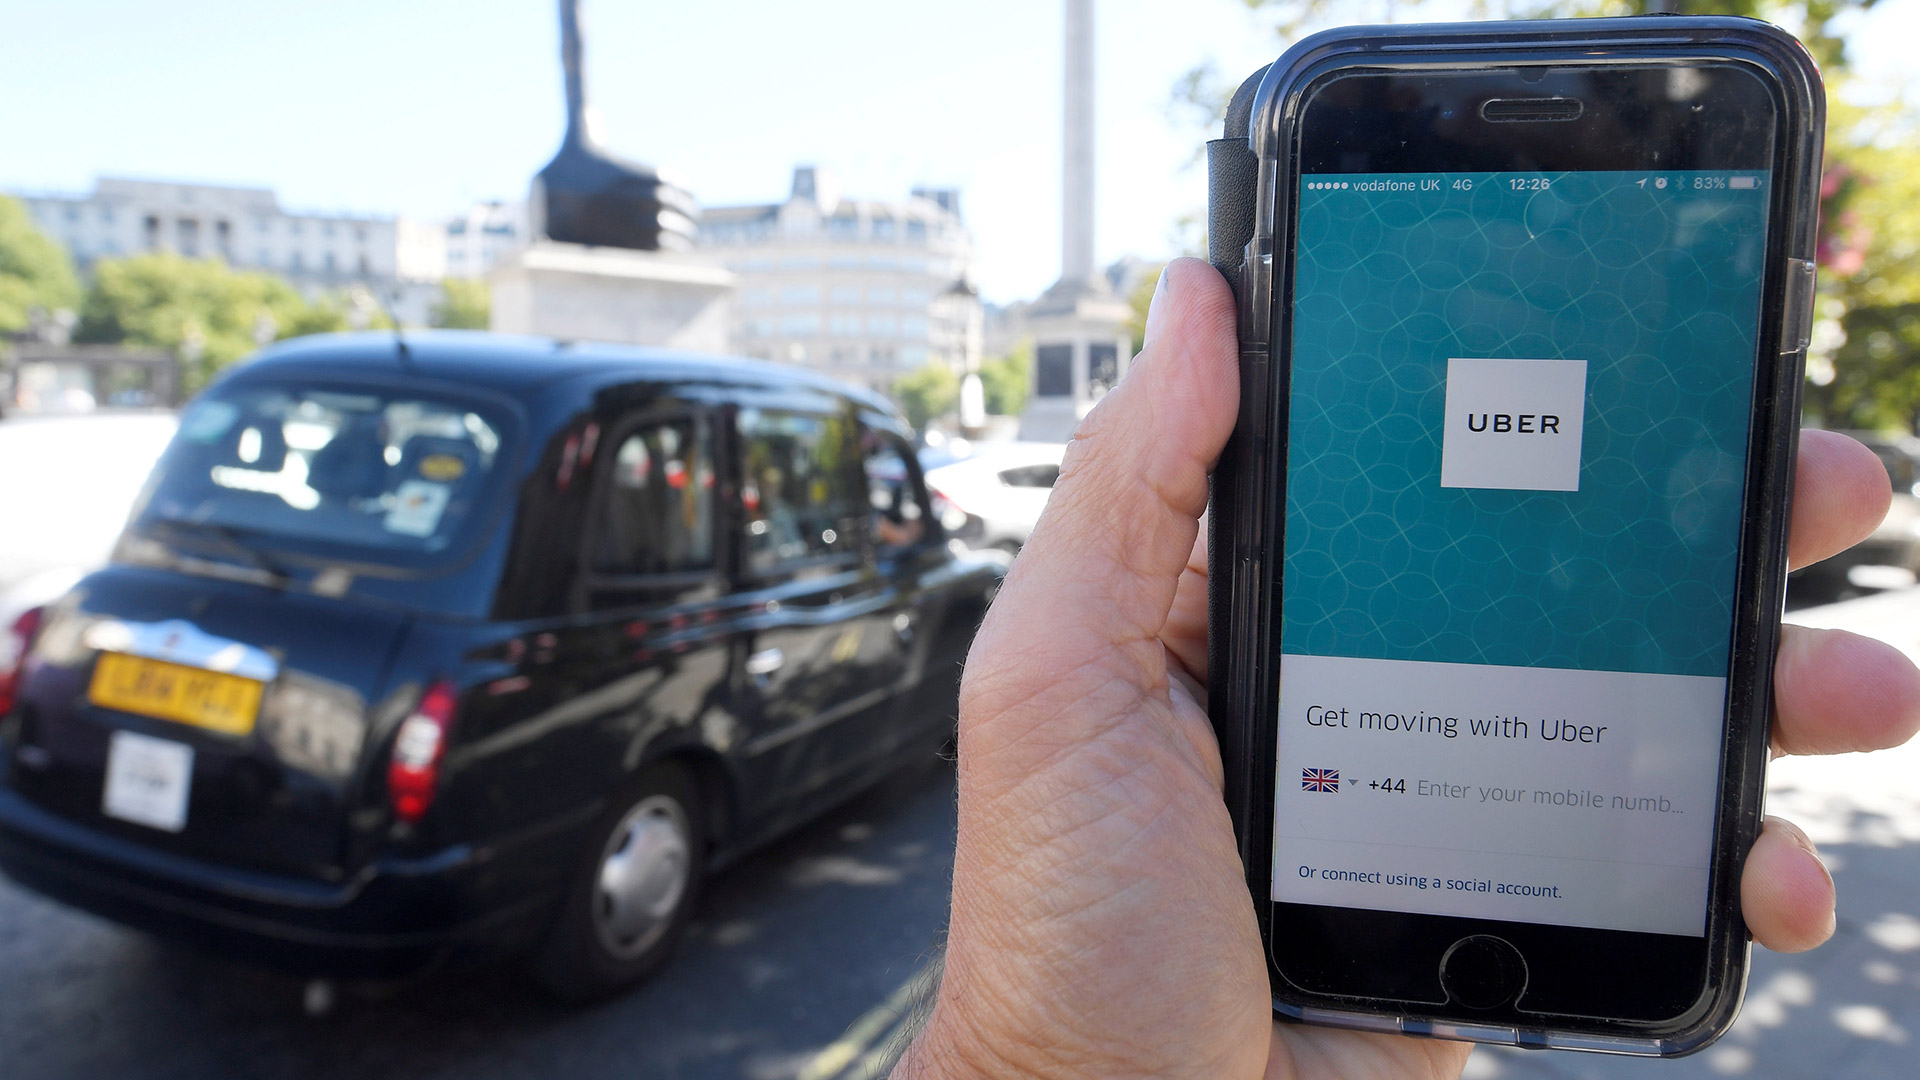 Dimite una directiva de Uber tras la revocación de la licencia en Londres